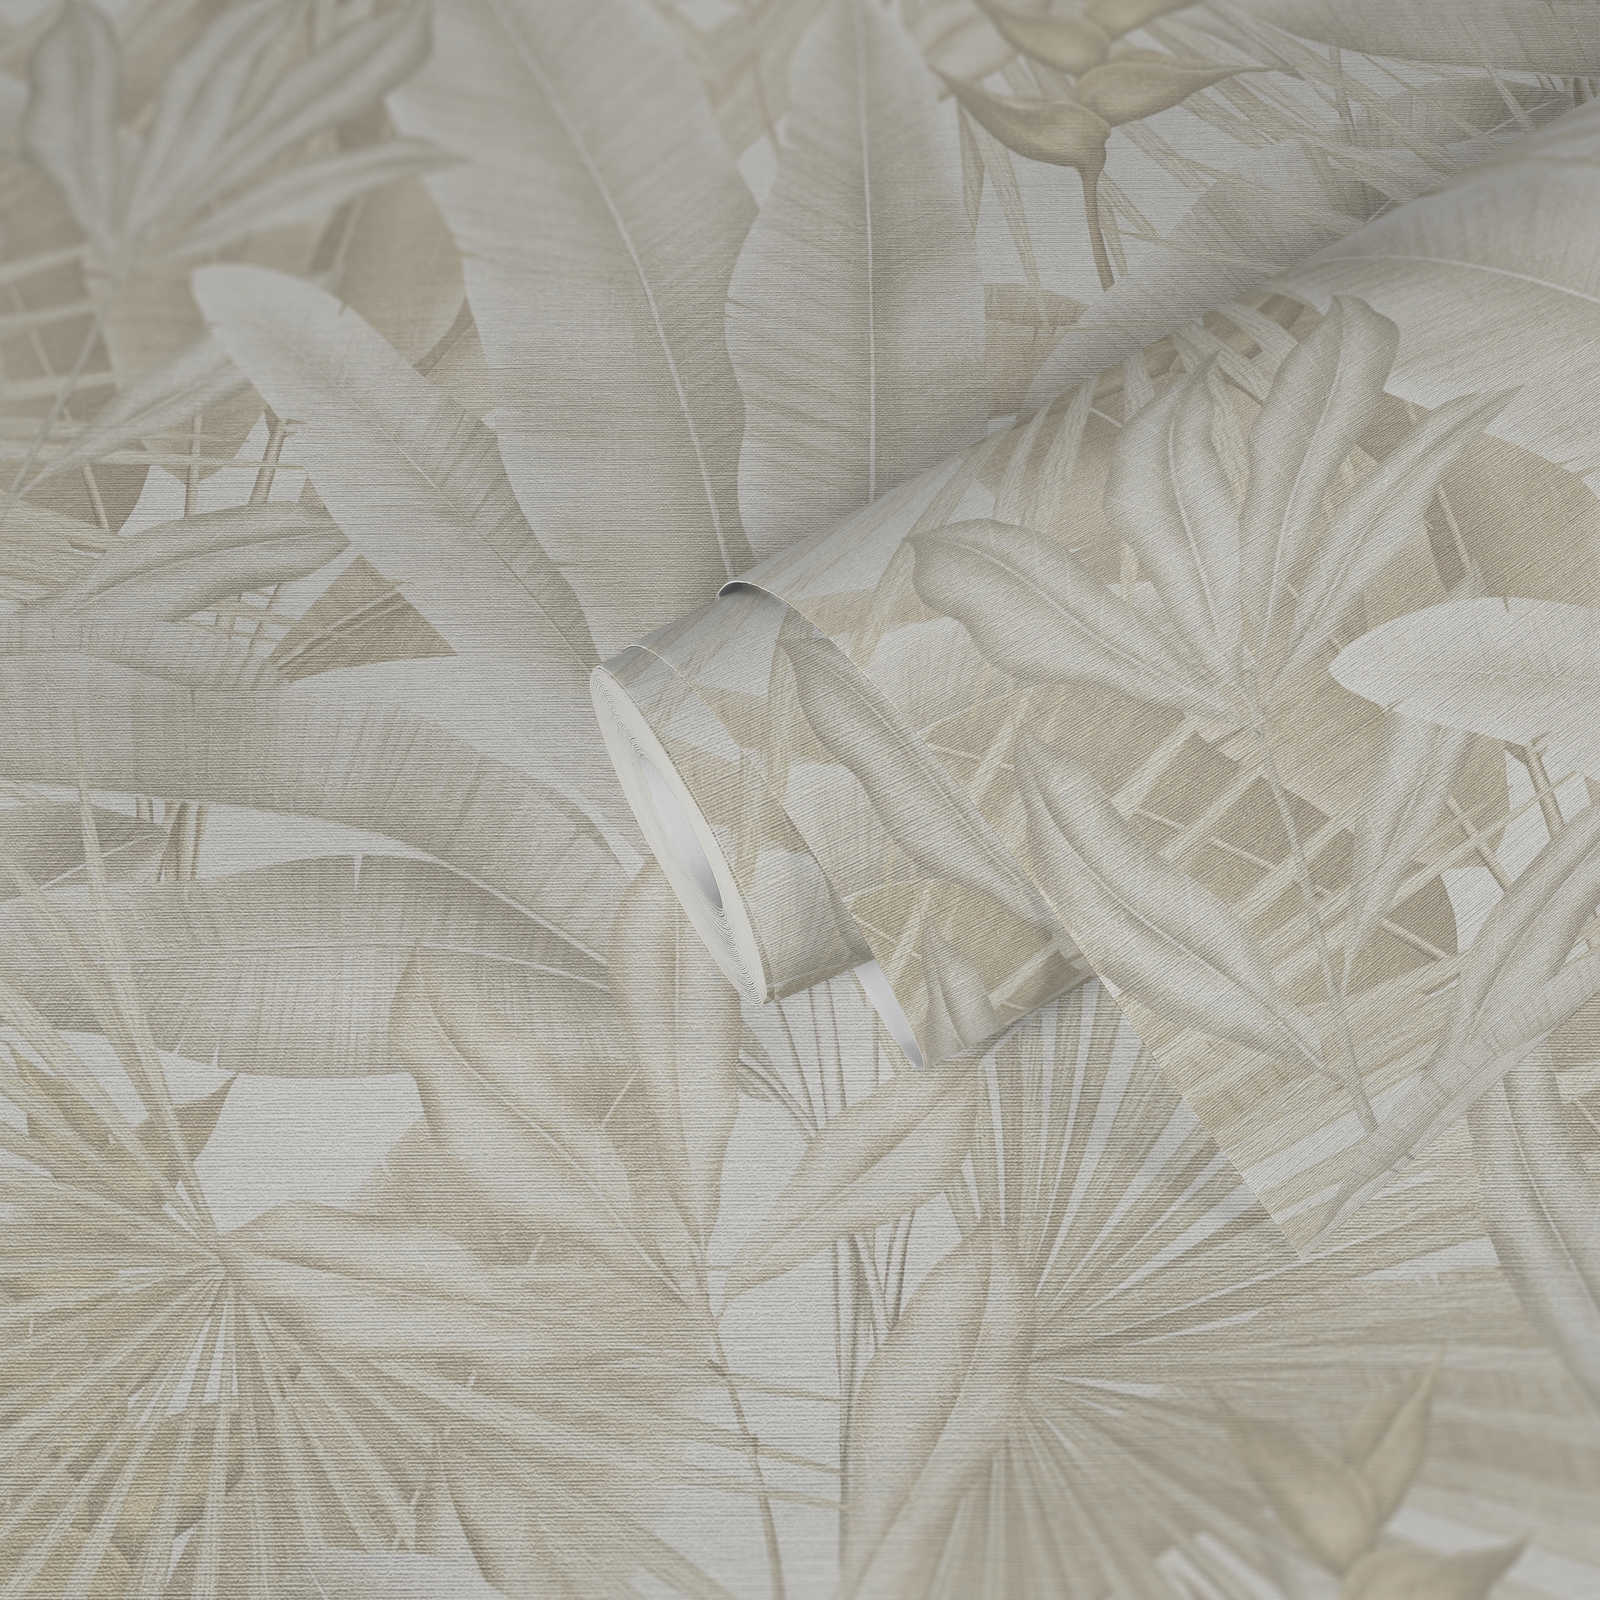             Jungle behang in zachte kleuren - beige, crème, grijs
        